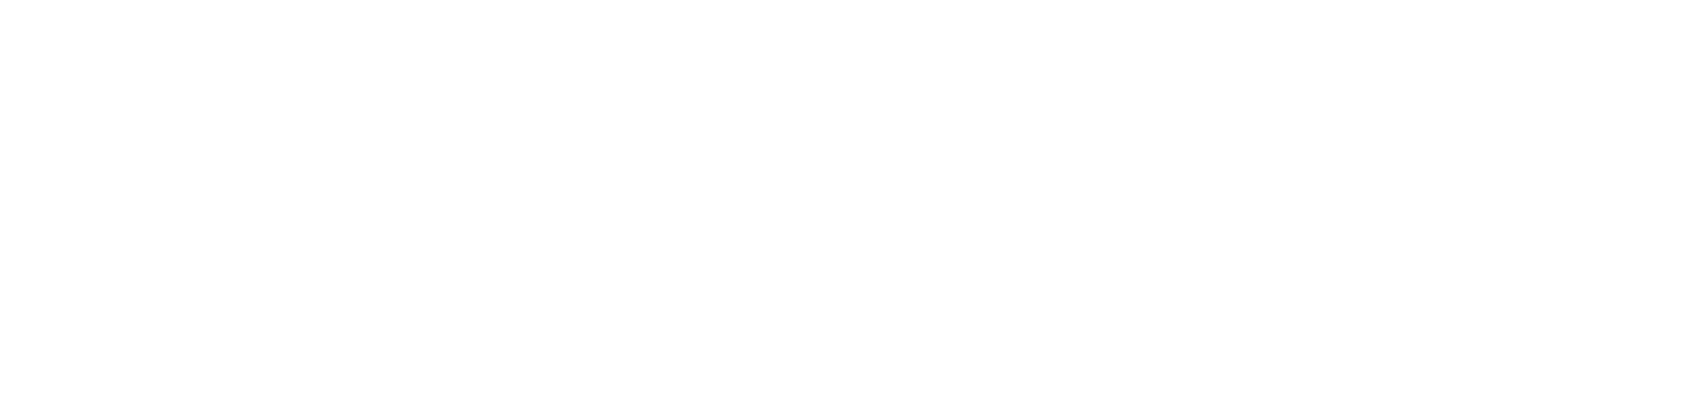 Wuliangye Yibin Logo groß für dunkle Hintergründe (transparentes PNG)